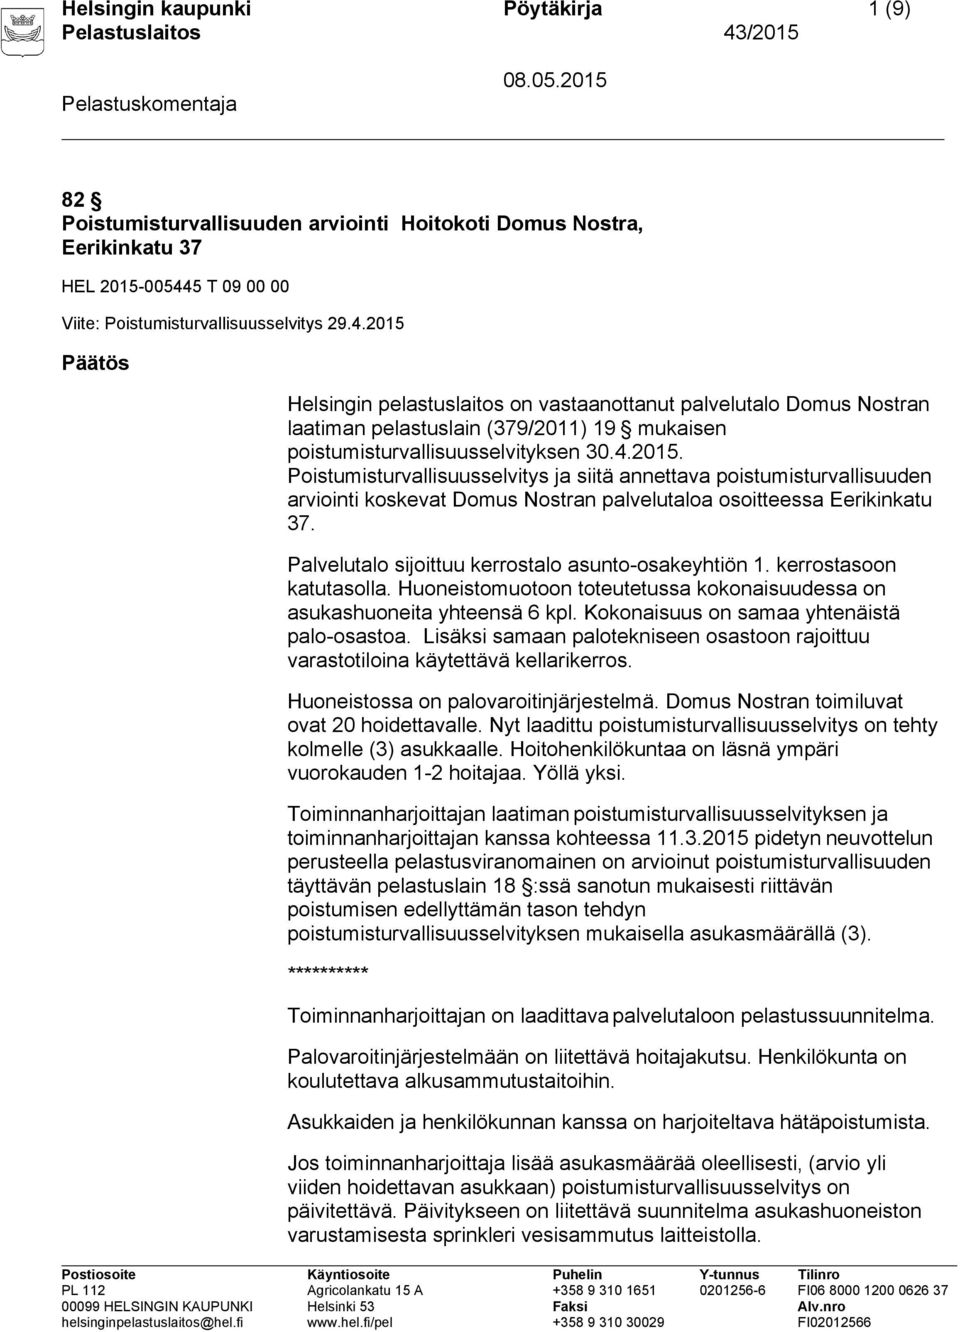 2015 Päätös Helsingin pelastuslaitos on vastaanottanut palvelutalo Domus Nostran laatiman pelastuslain (379/2011) 19 mukaisen poistumisturvallisuusselvityksen 30.4.2015. Poistumisturvallisuusselvitys ja siitä annettava poistumisturvallisuuden arviointi koskevat Domus Nostran palvelutaloa osoitteessa Eerikinkatu 37.